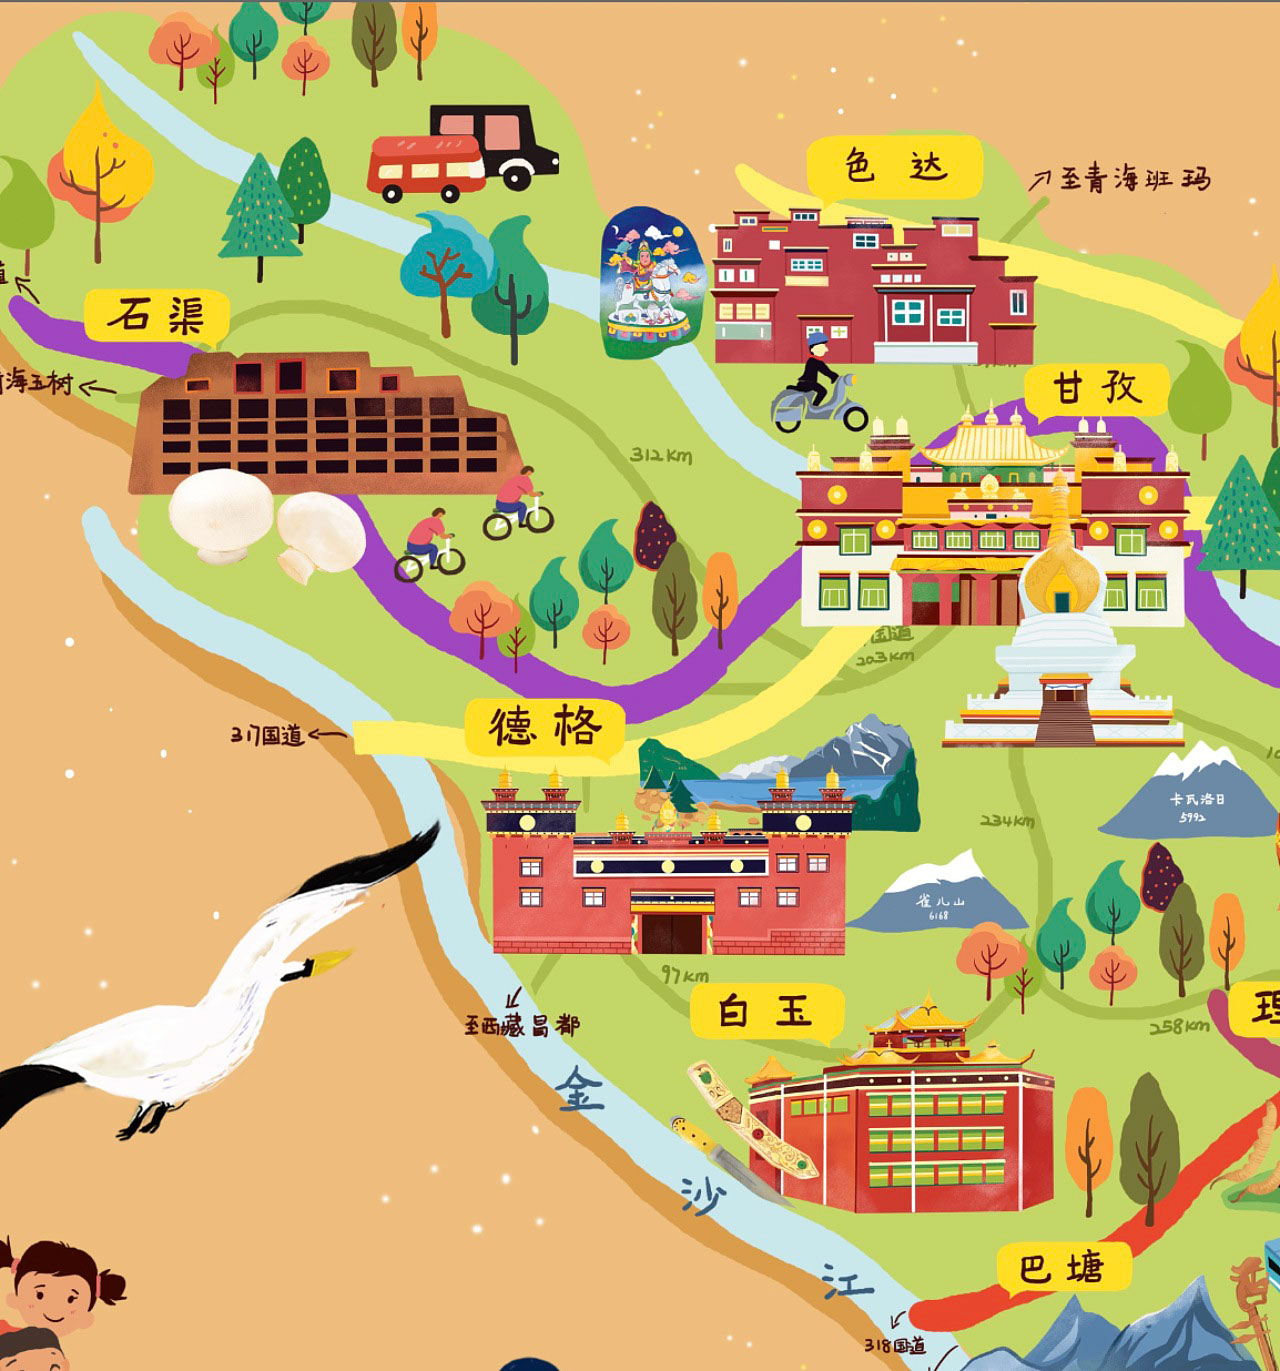 湾岭镇手绘地图景区的文化宝库